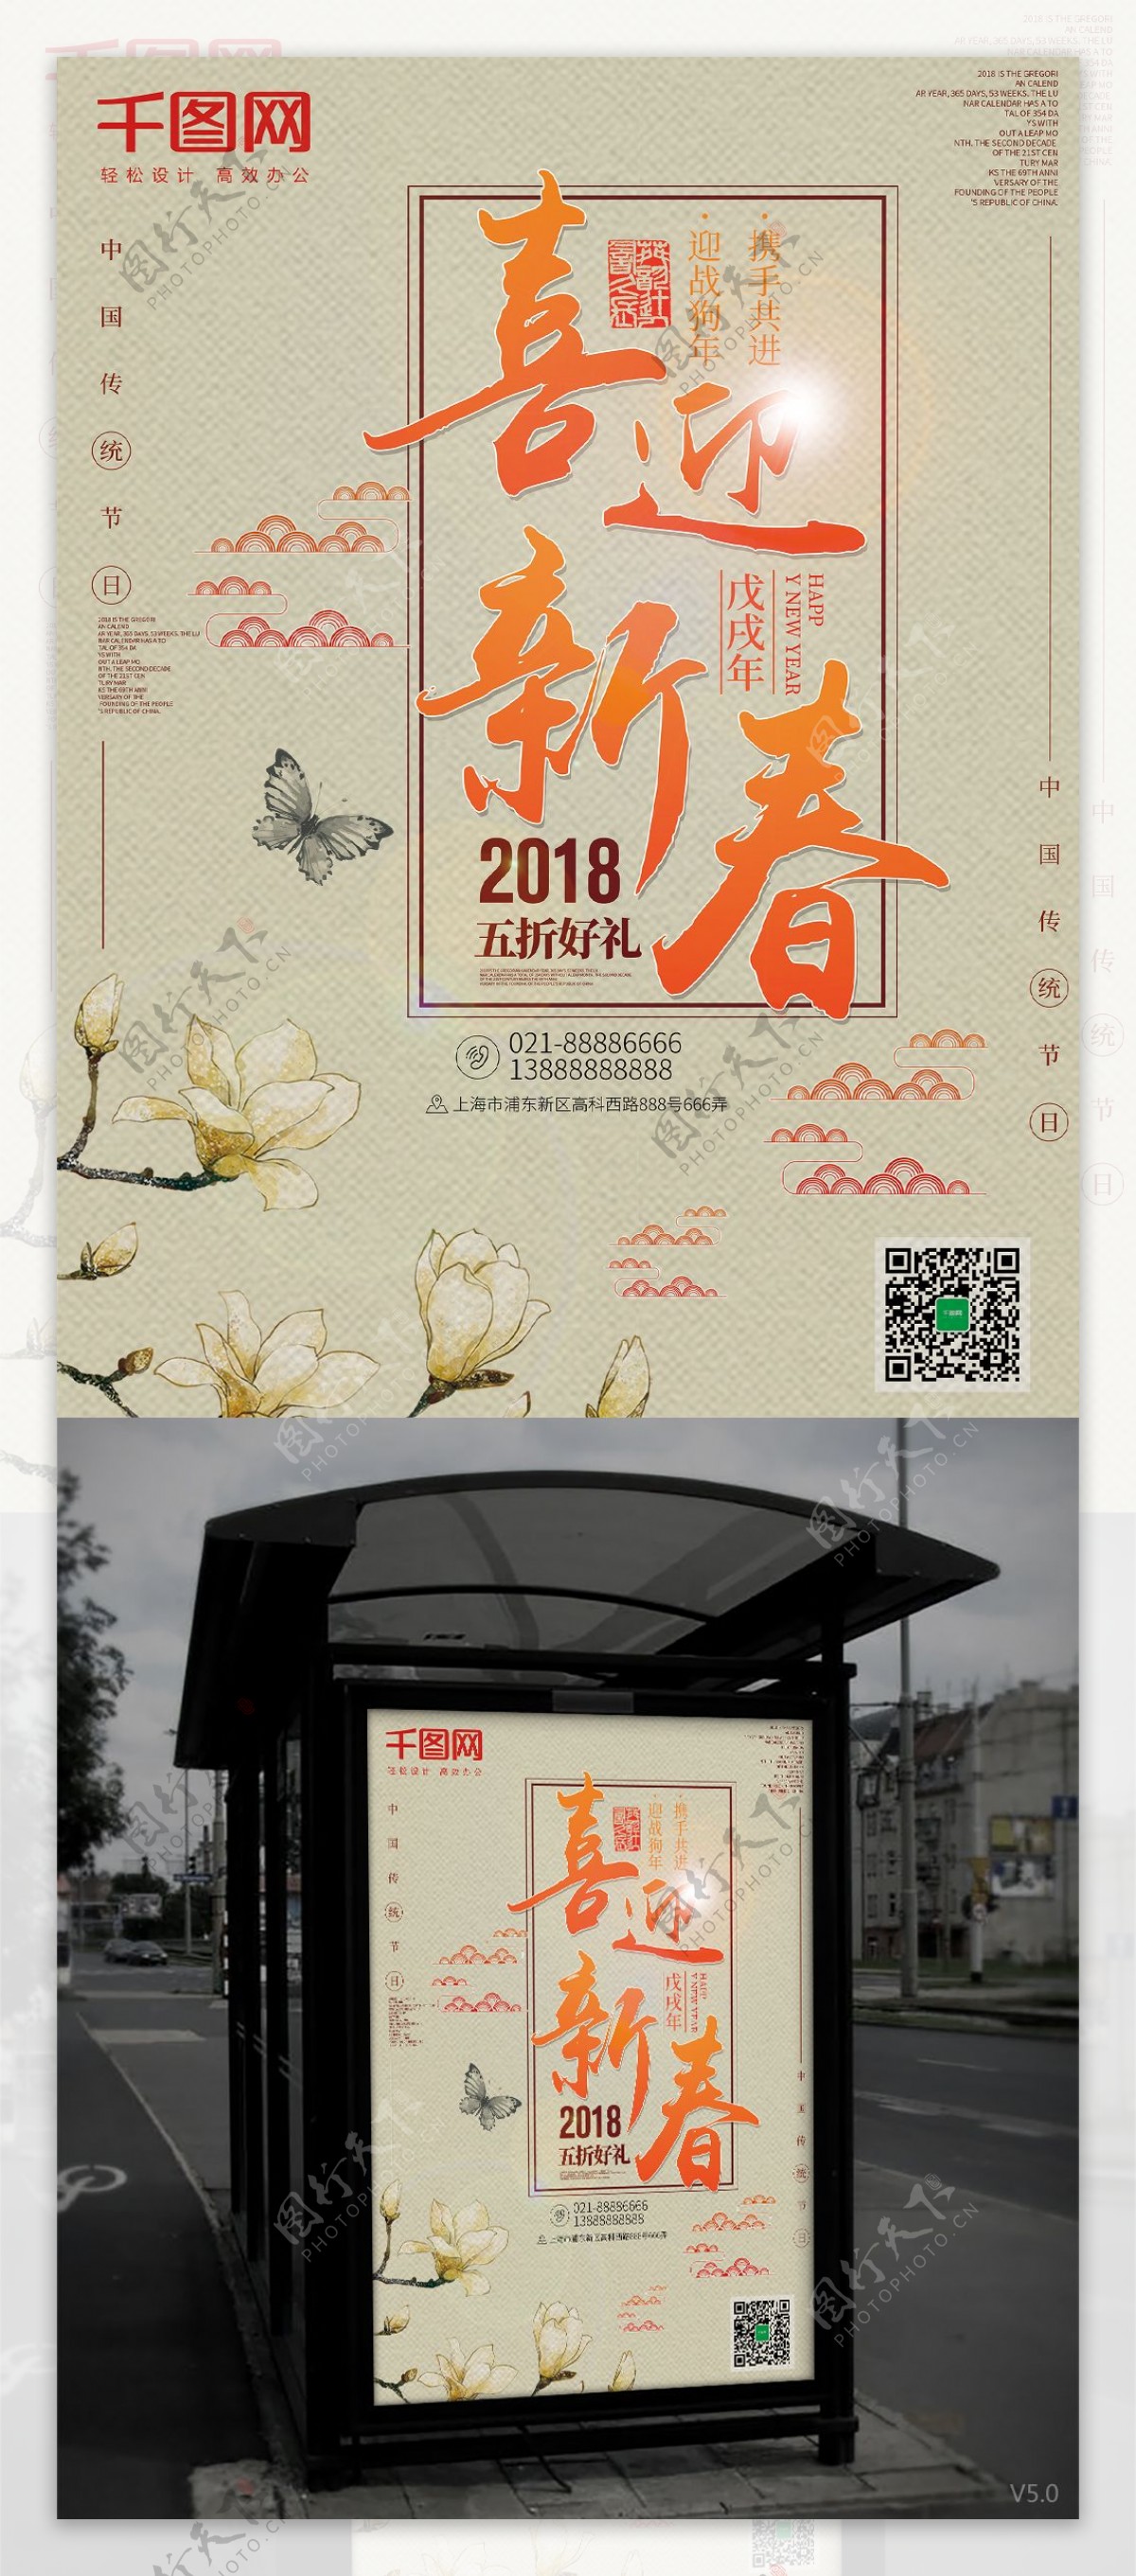 2018喜迎新春米灰色简约节日海报